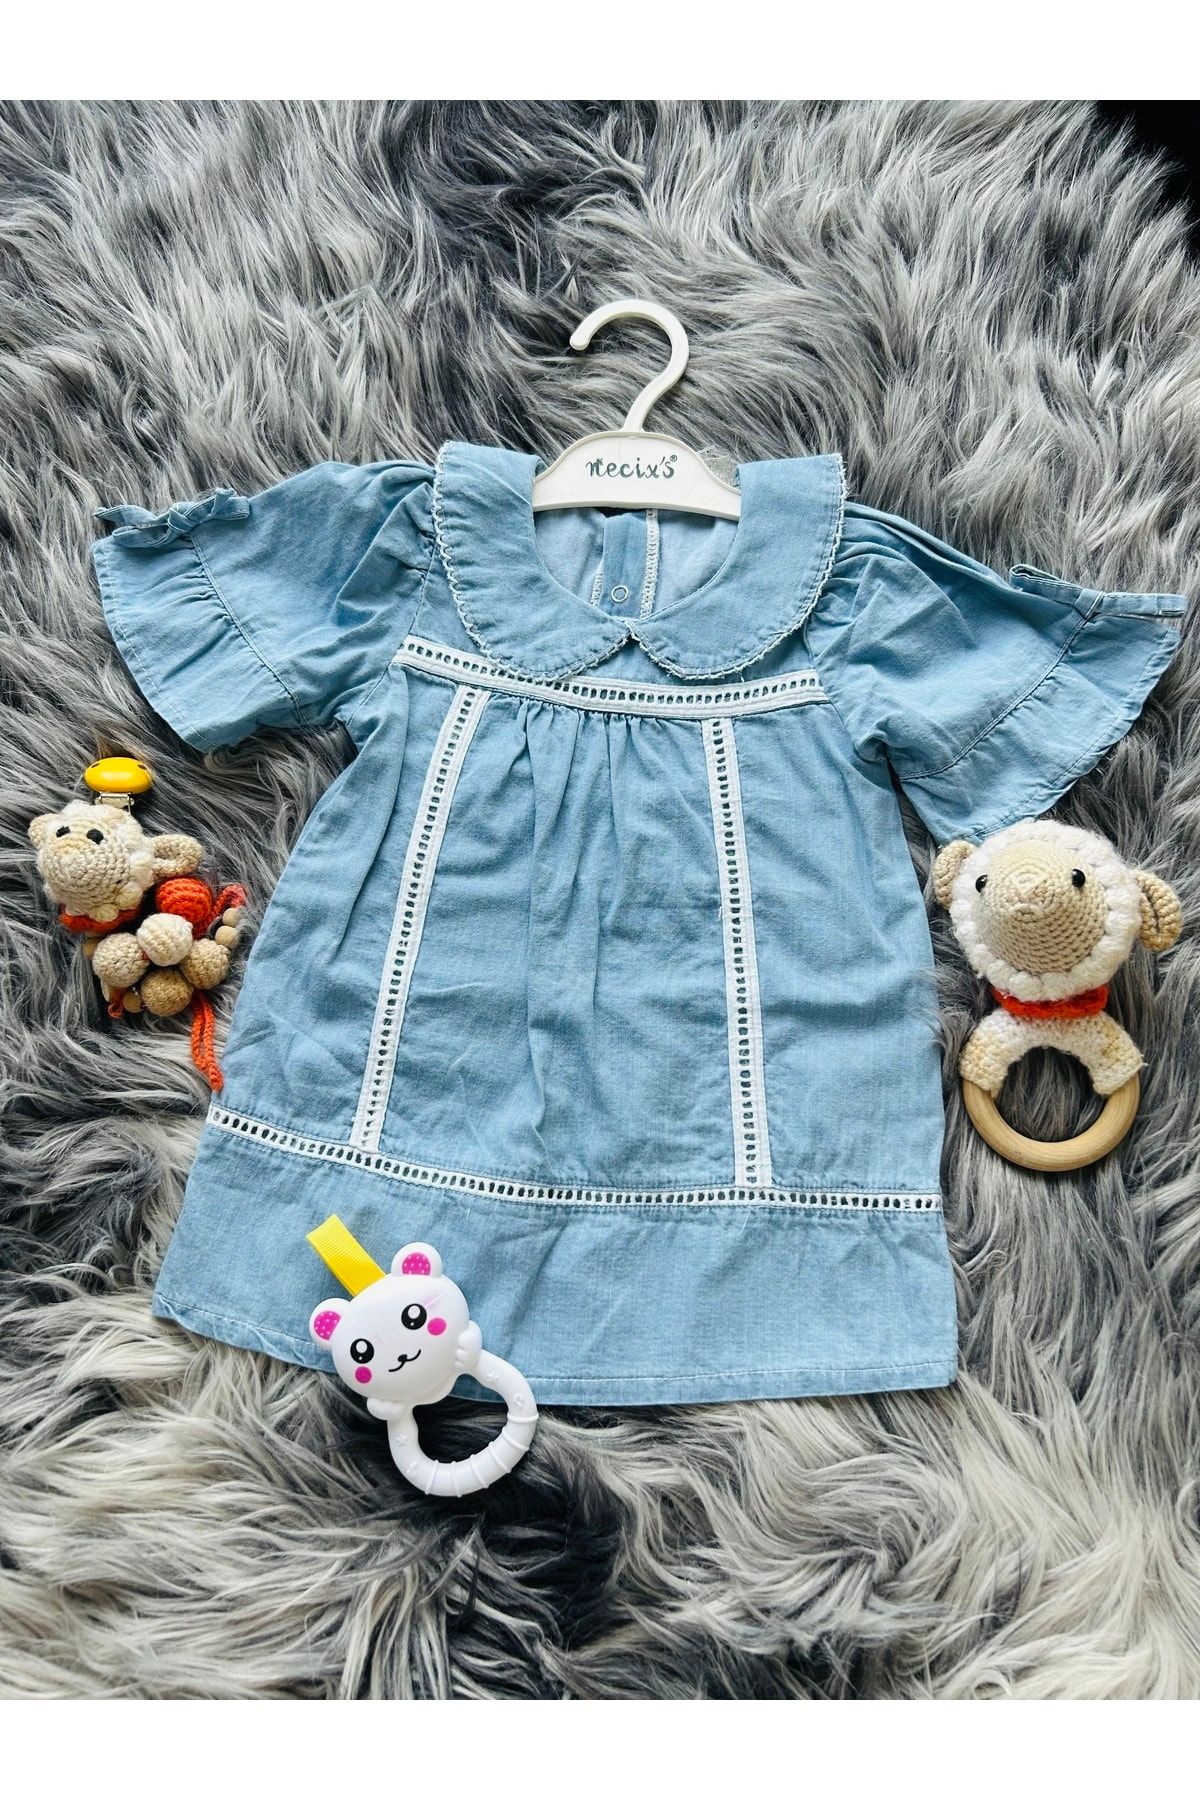 Necix's Kız Bebek Mavi Kot Önlük Yaka Yazlık Yeni Sezon Elbise